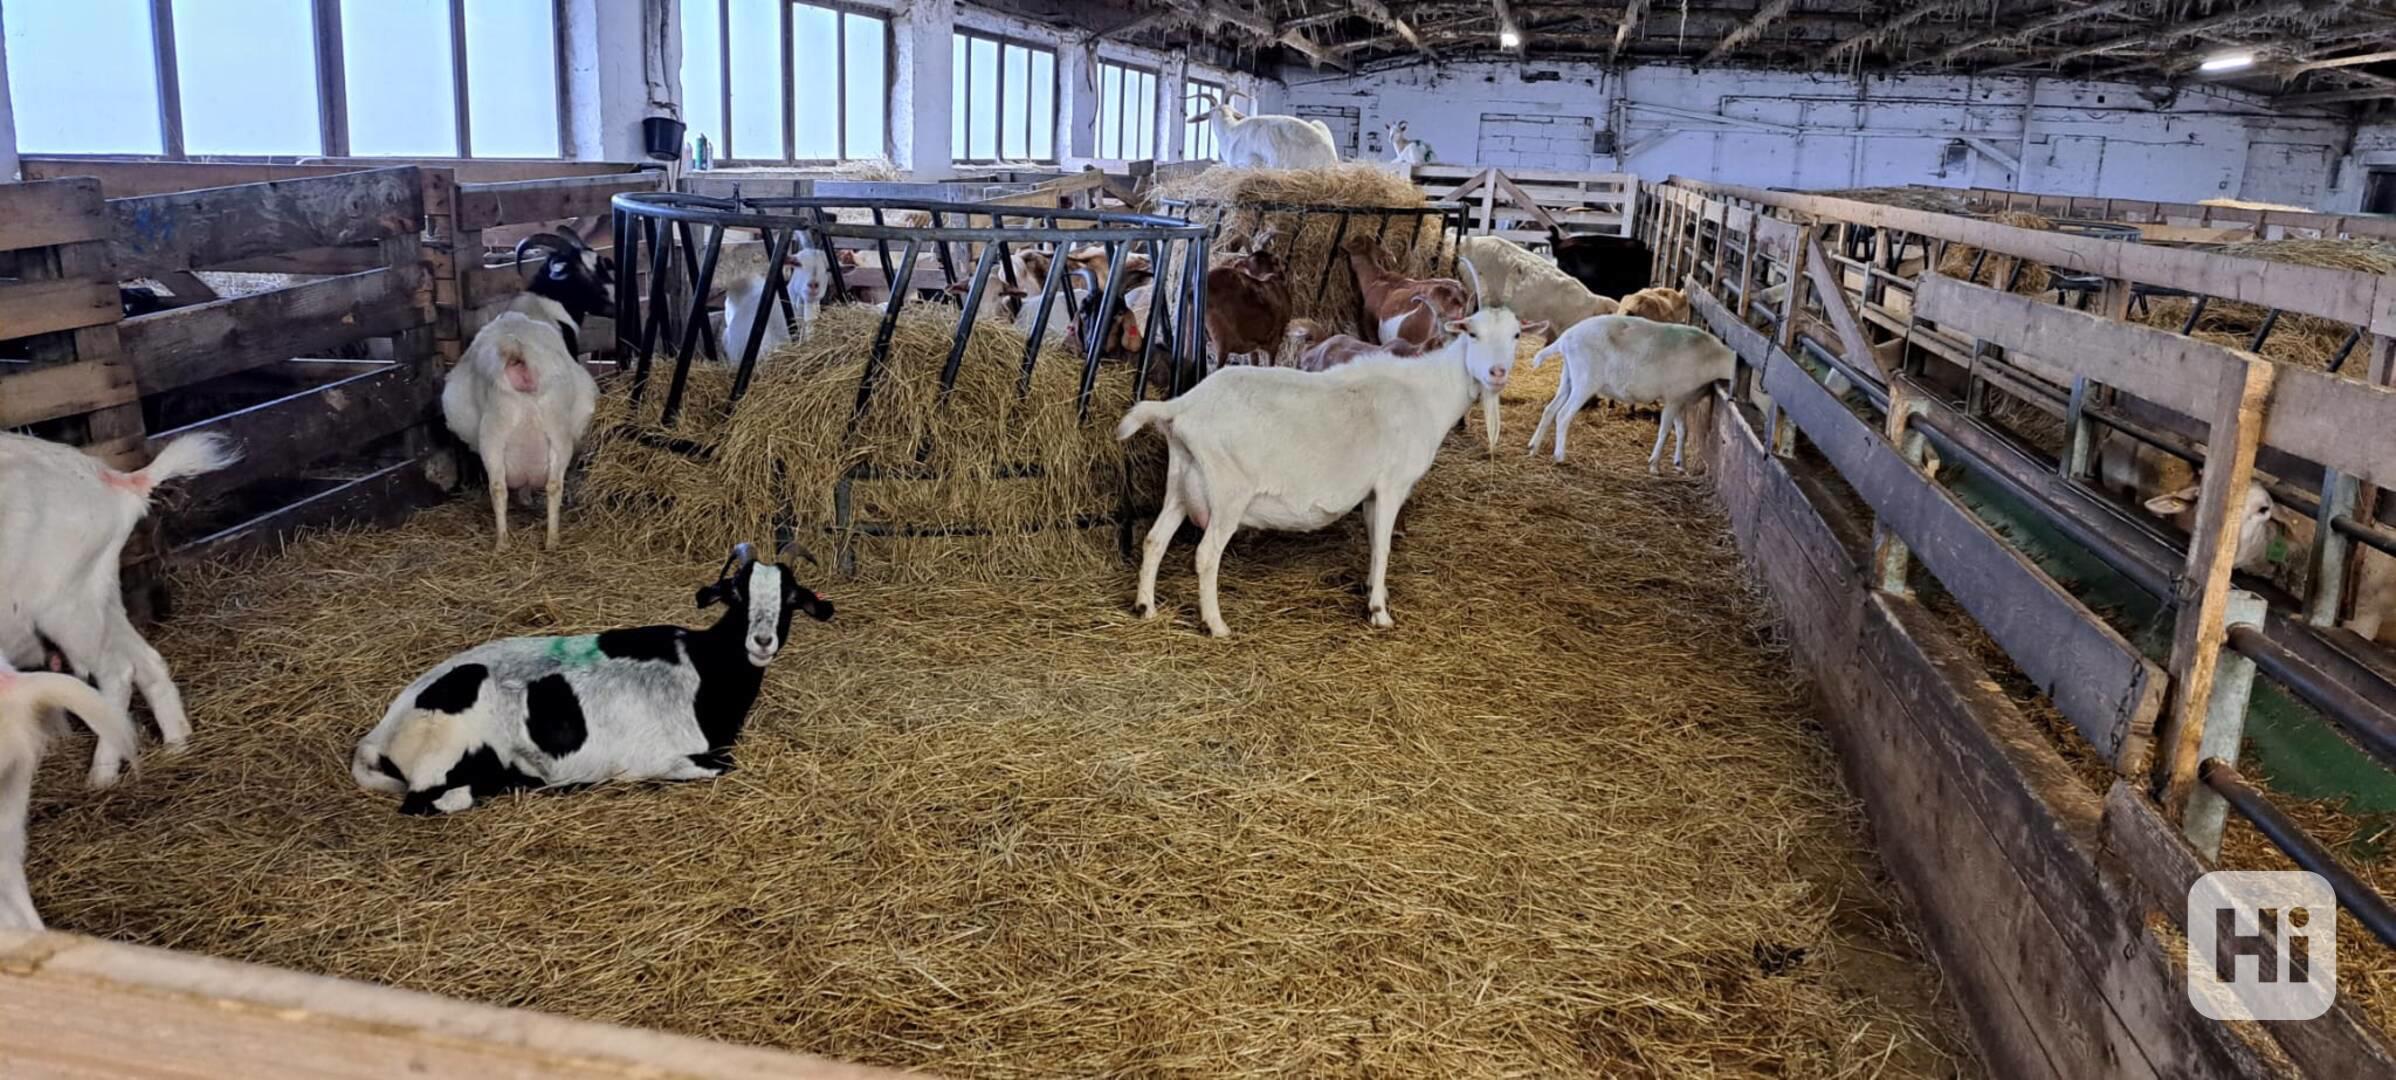 Užitkové stádo koz z ekologického zemědělství - foto 1